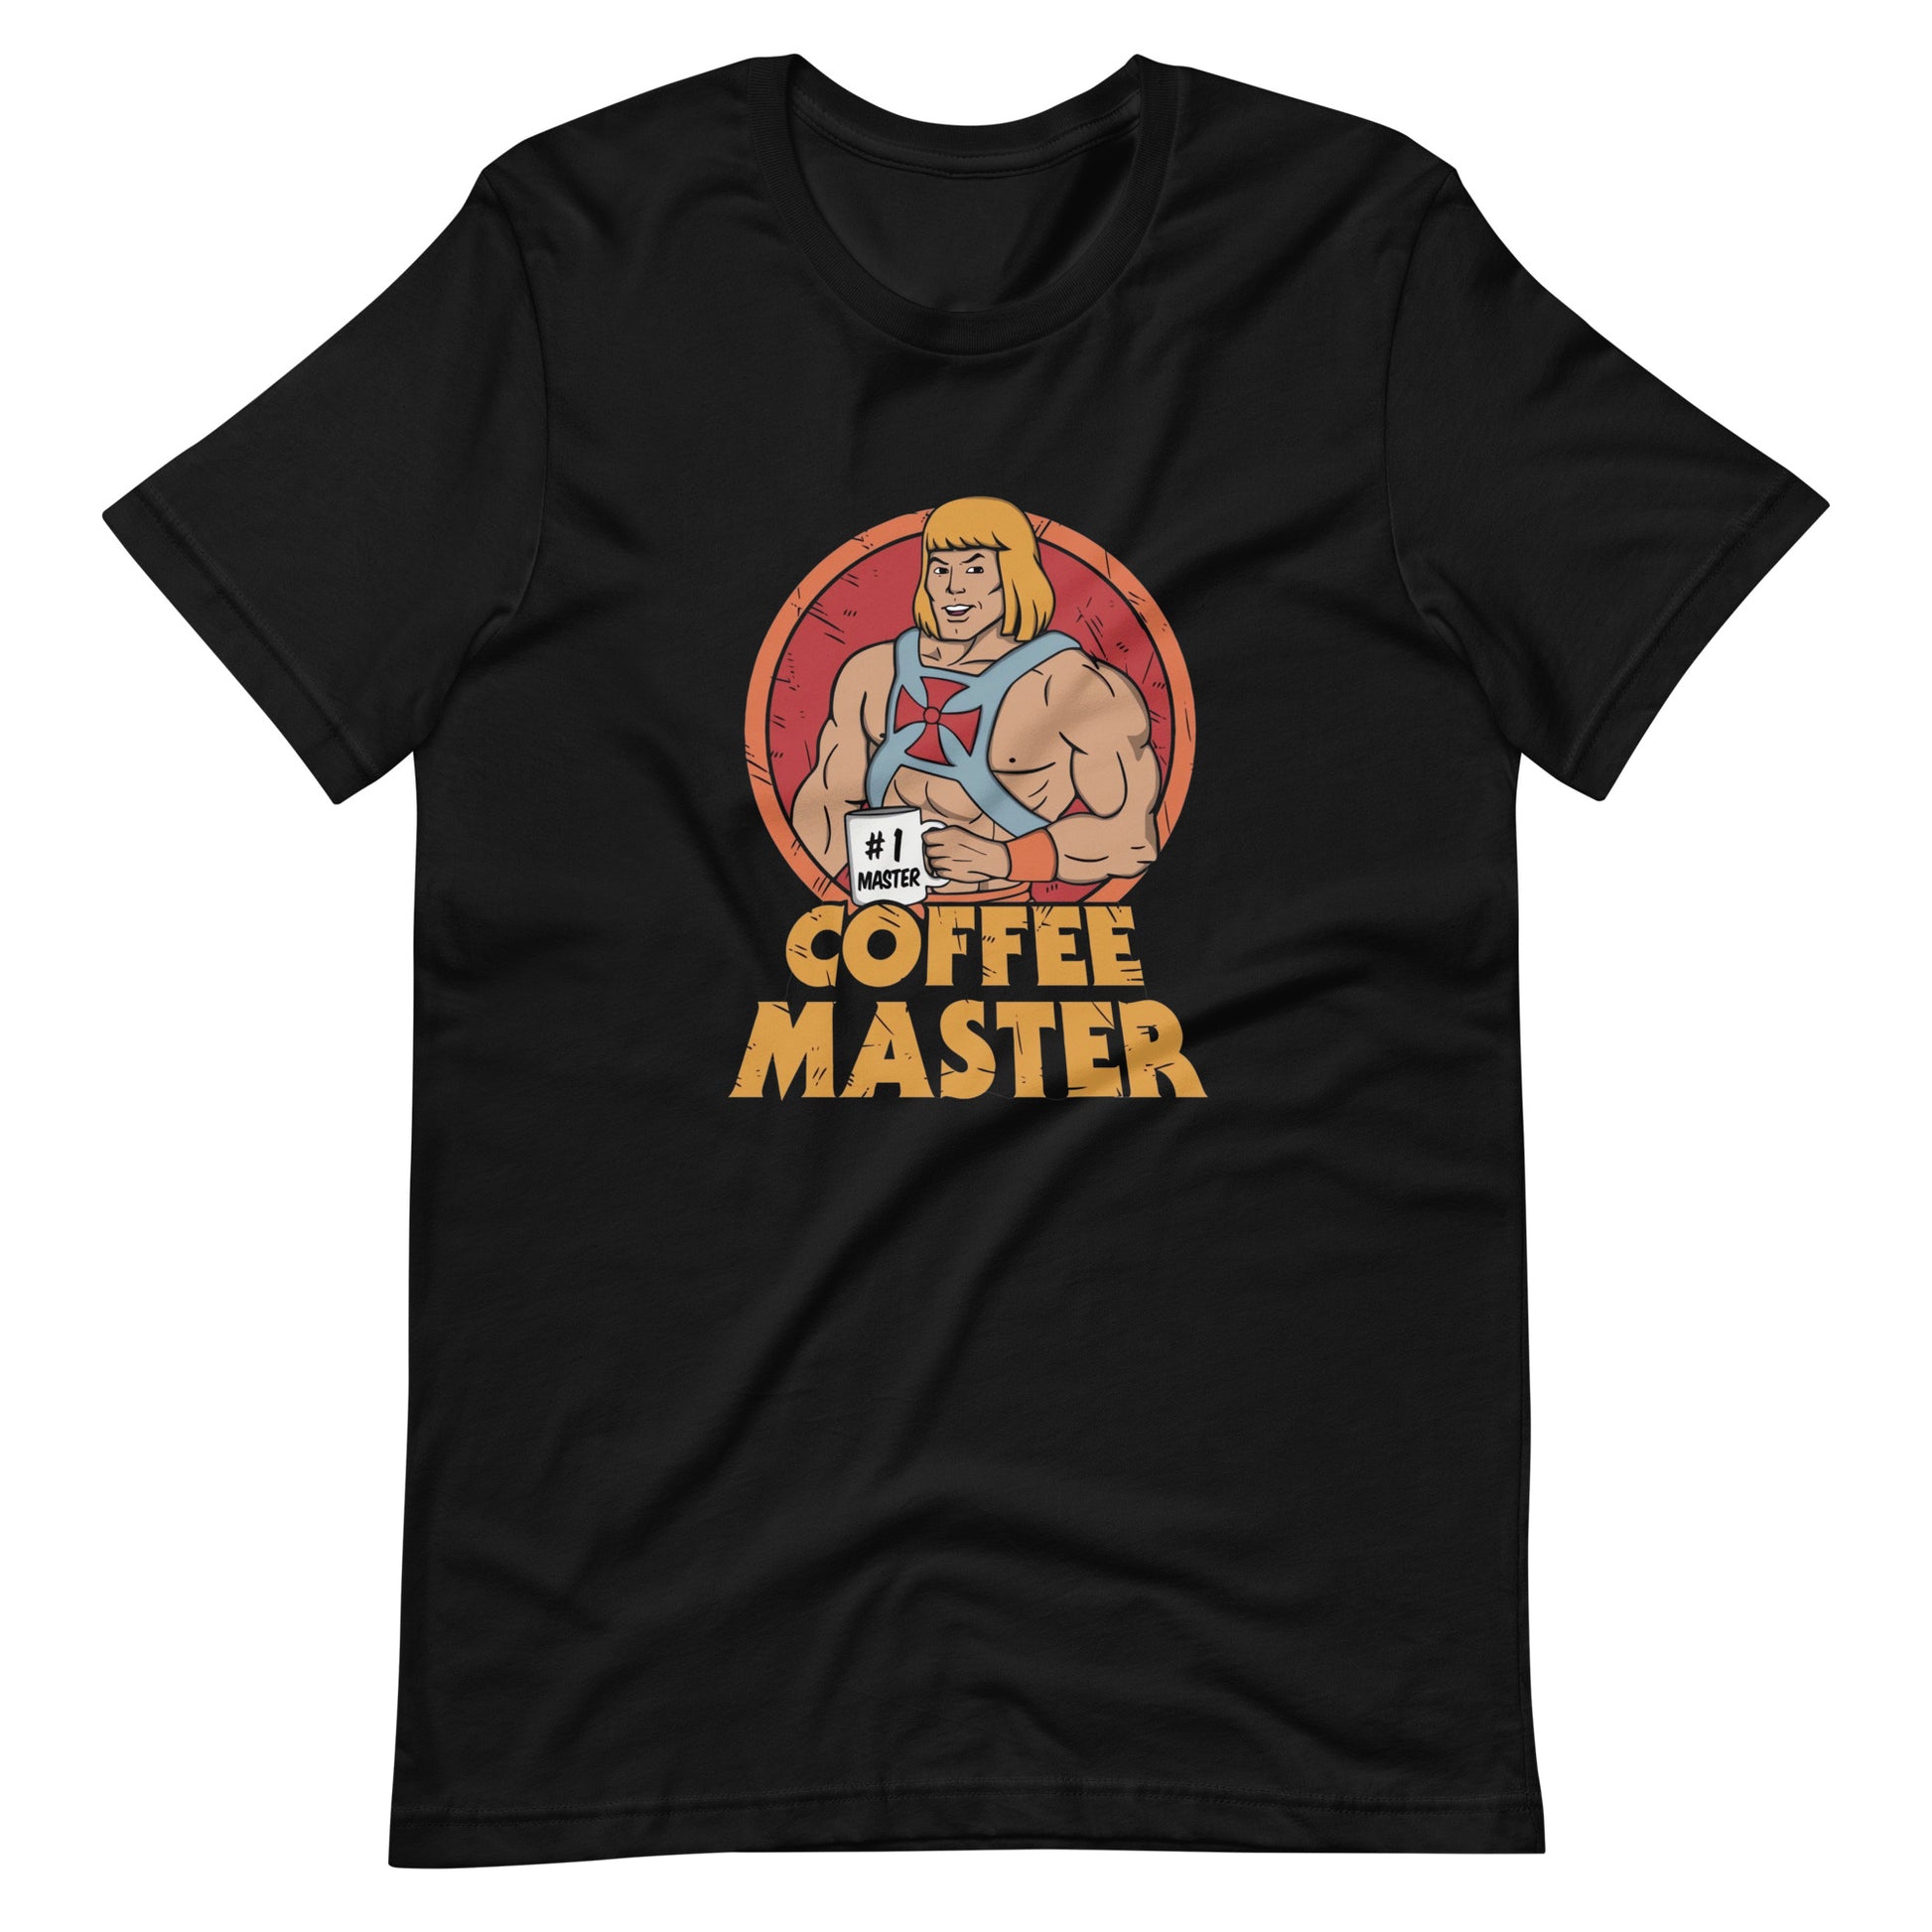 Camiseta Coffee Master, nuestras opciones de playeras son Unisex. disponible en Superstar. Compra y envíos internacionales.